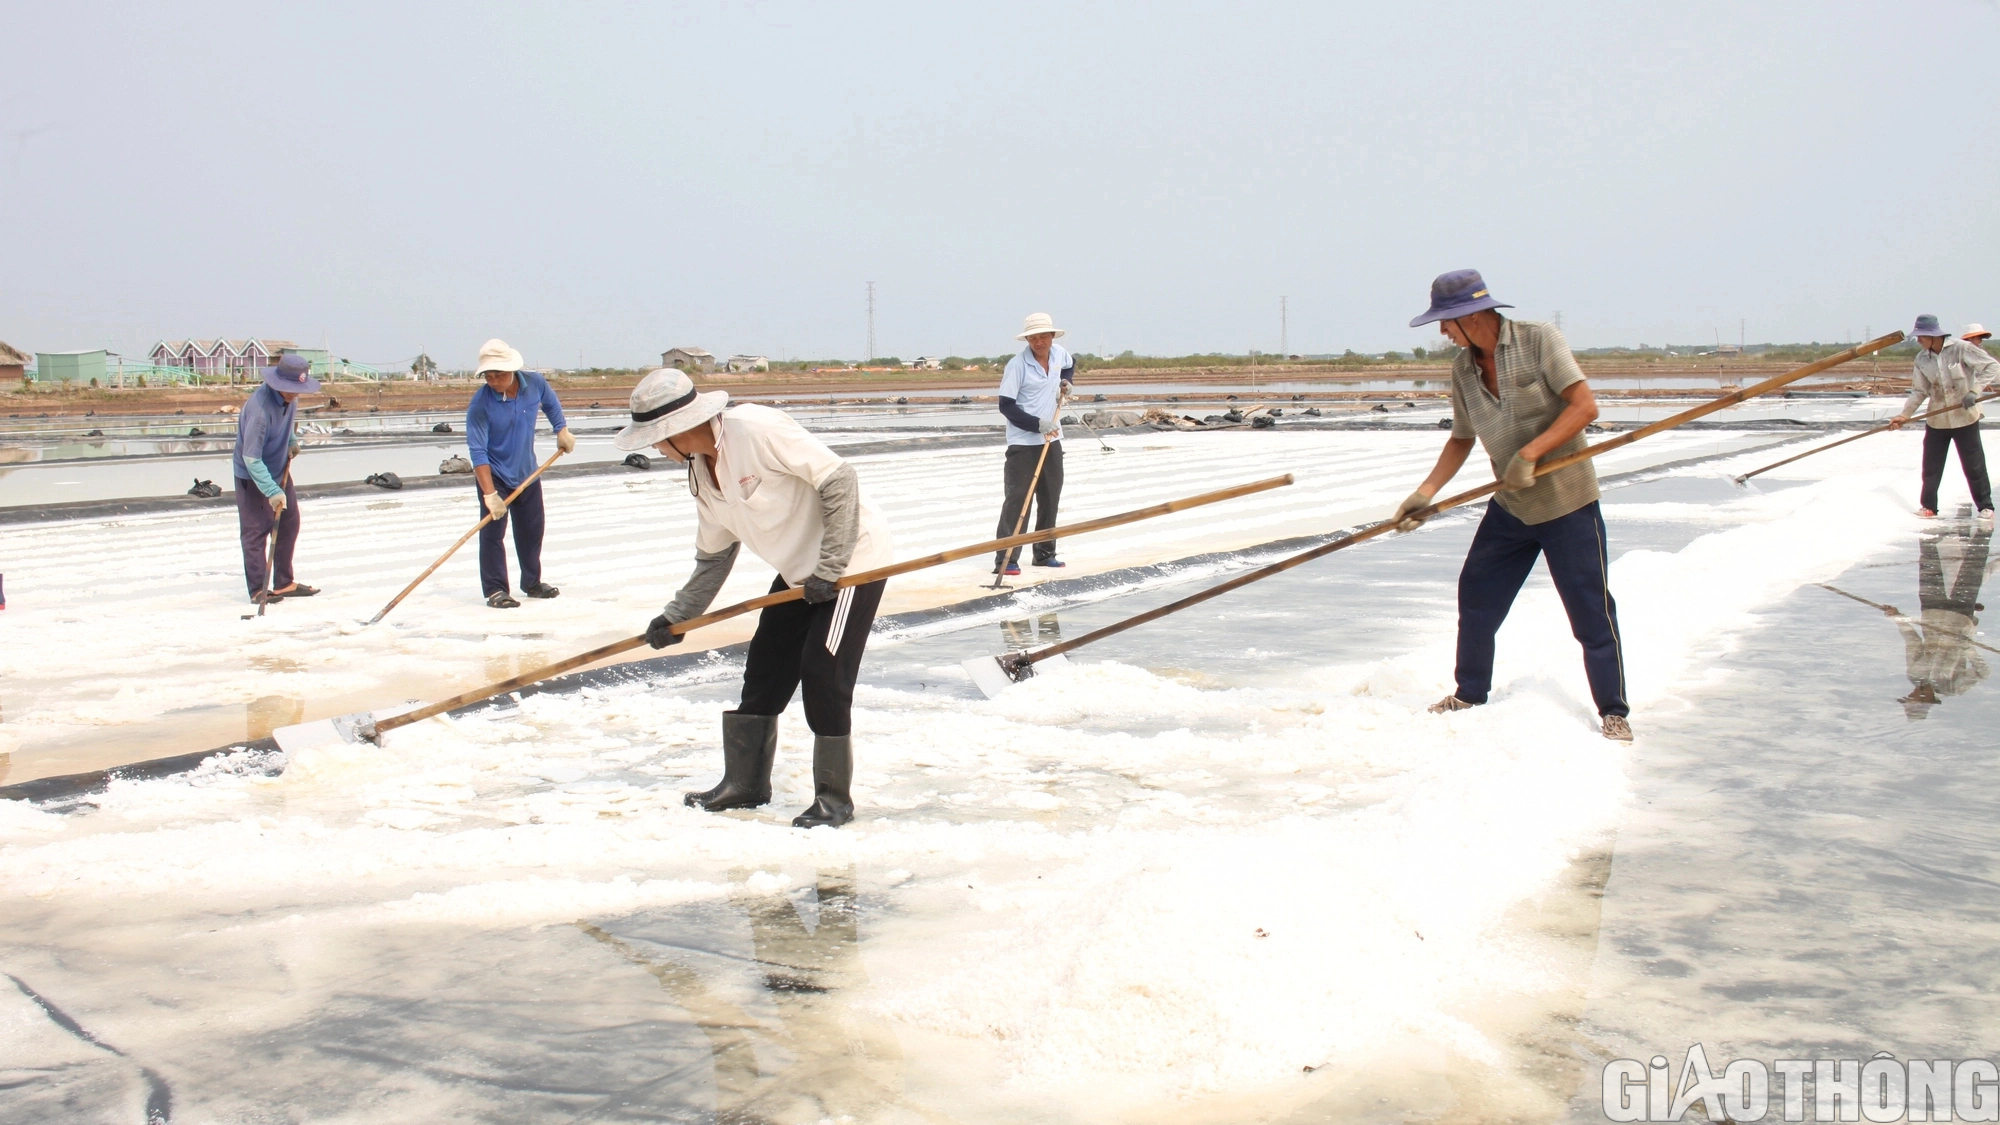 130 tỷ đồng, cấp thiết đầu tư phát triển hạ tầng nghề muối ở Bạc Liêu - Ảnh 2.